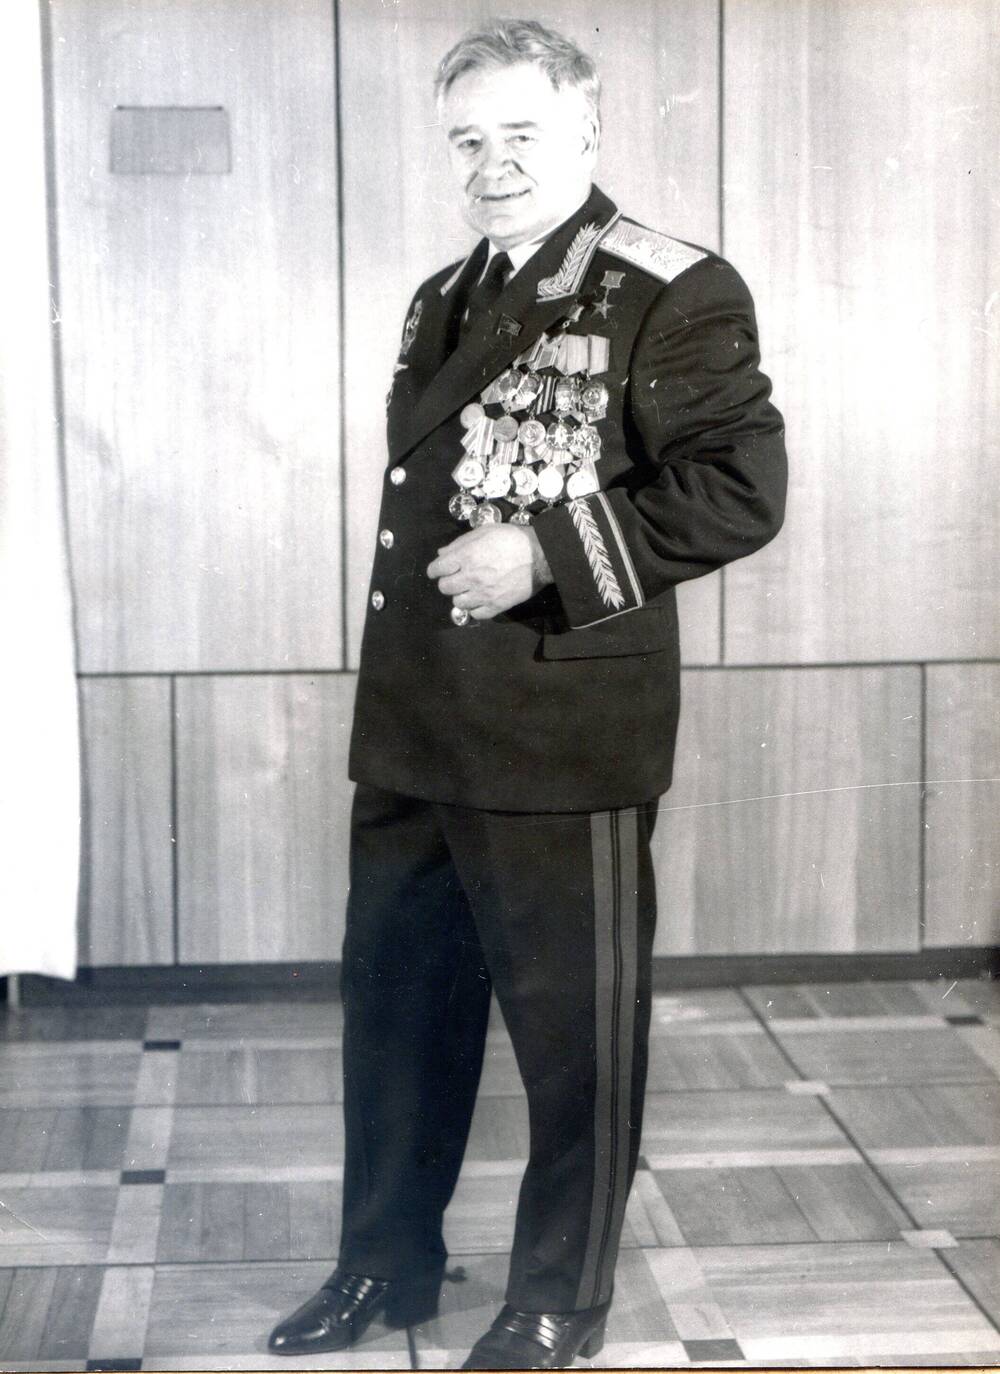 Фотопортрет анфас ч/б. П.С. Плешаков - министр радиопромышленности СССР сфотографирован в генеральской форме в рост с наградами в своём кабинете. 1980-е гг.